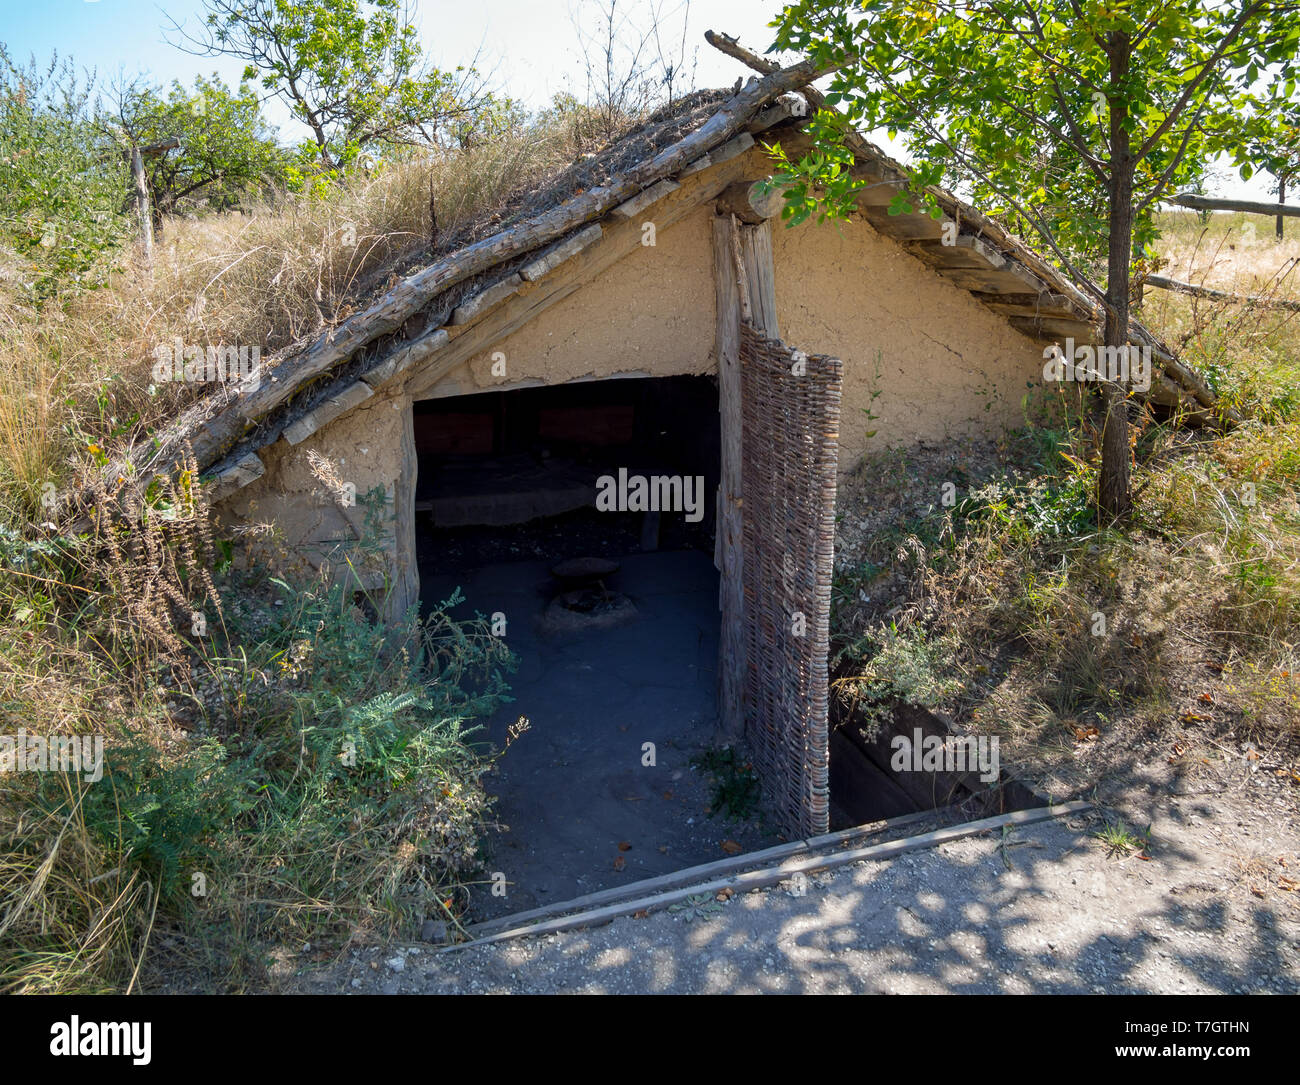 Semi-agriculteur avec un toit à deux versants, 'parc archéologique des nomades vers les villes", Divnogorye, région de Voronezh Banque D'Images